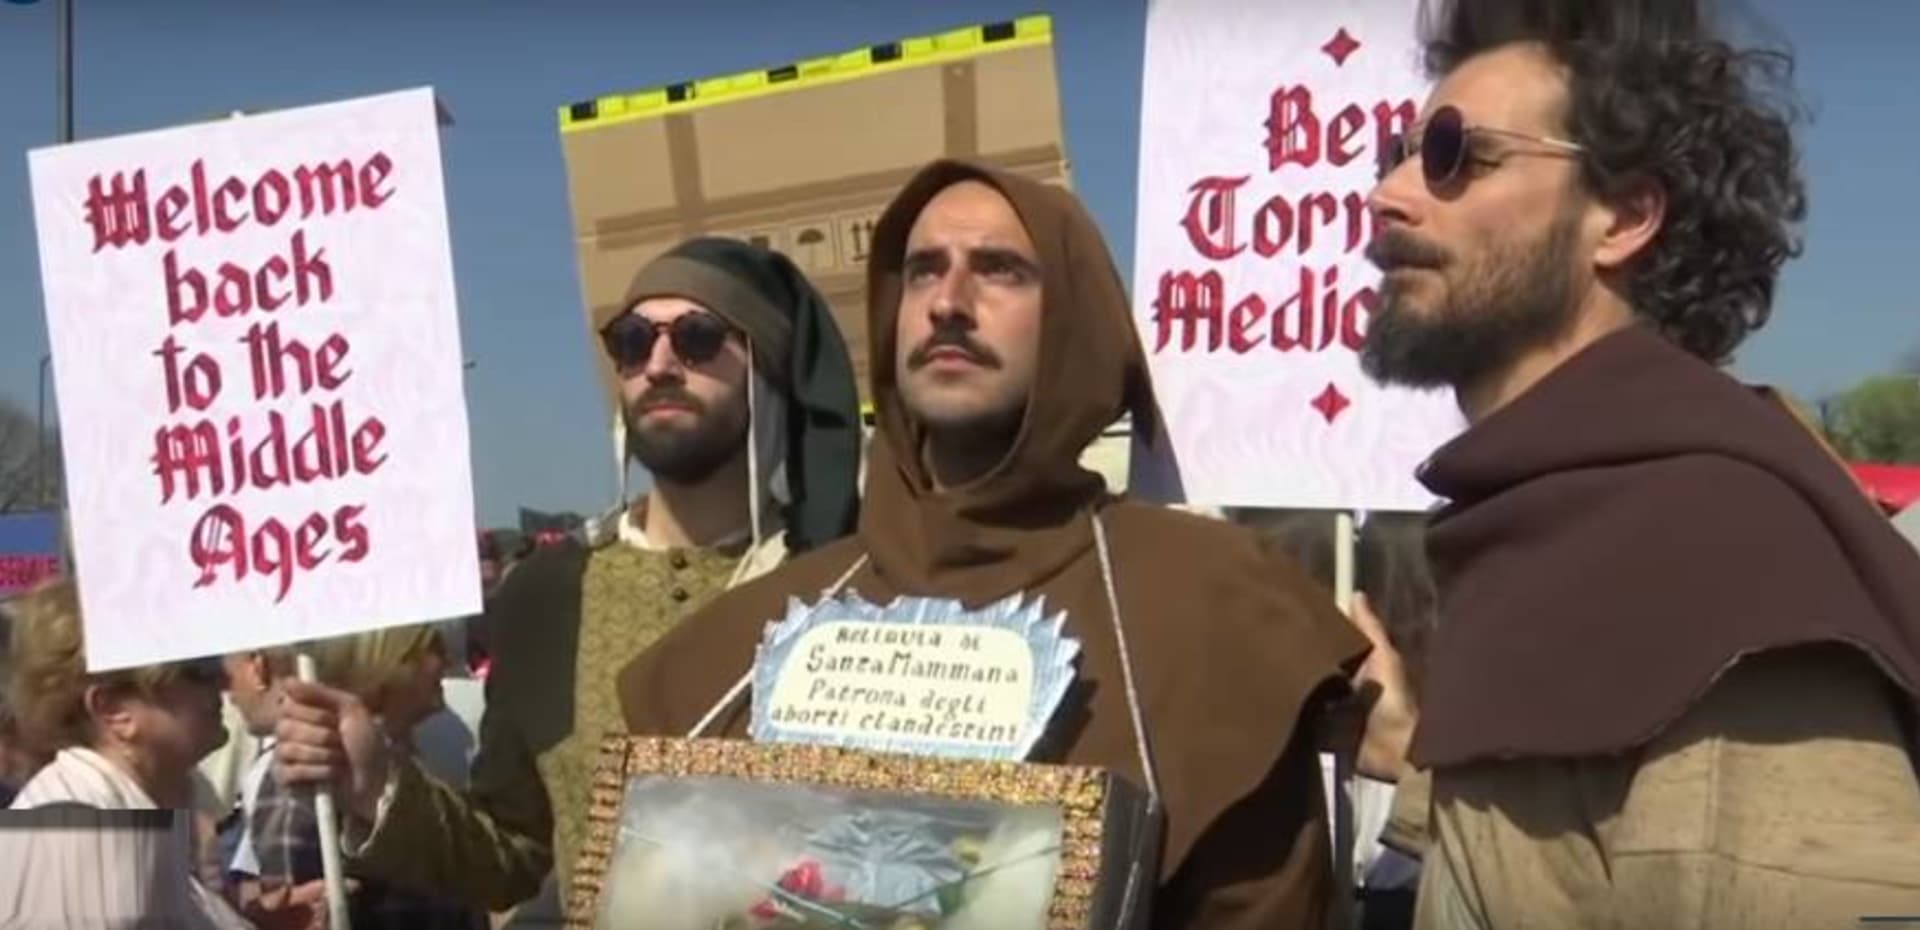 Levicoví demonstranti ve Veroně protestovali proti Salvinimu a Světovému kongresu rodin